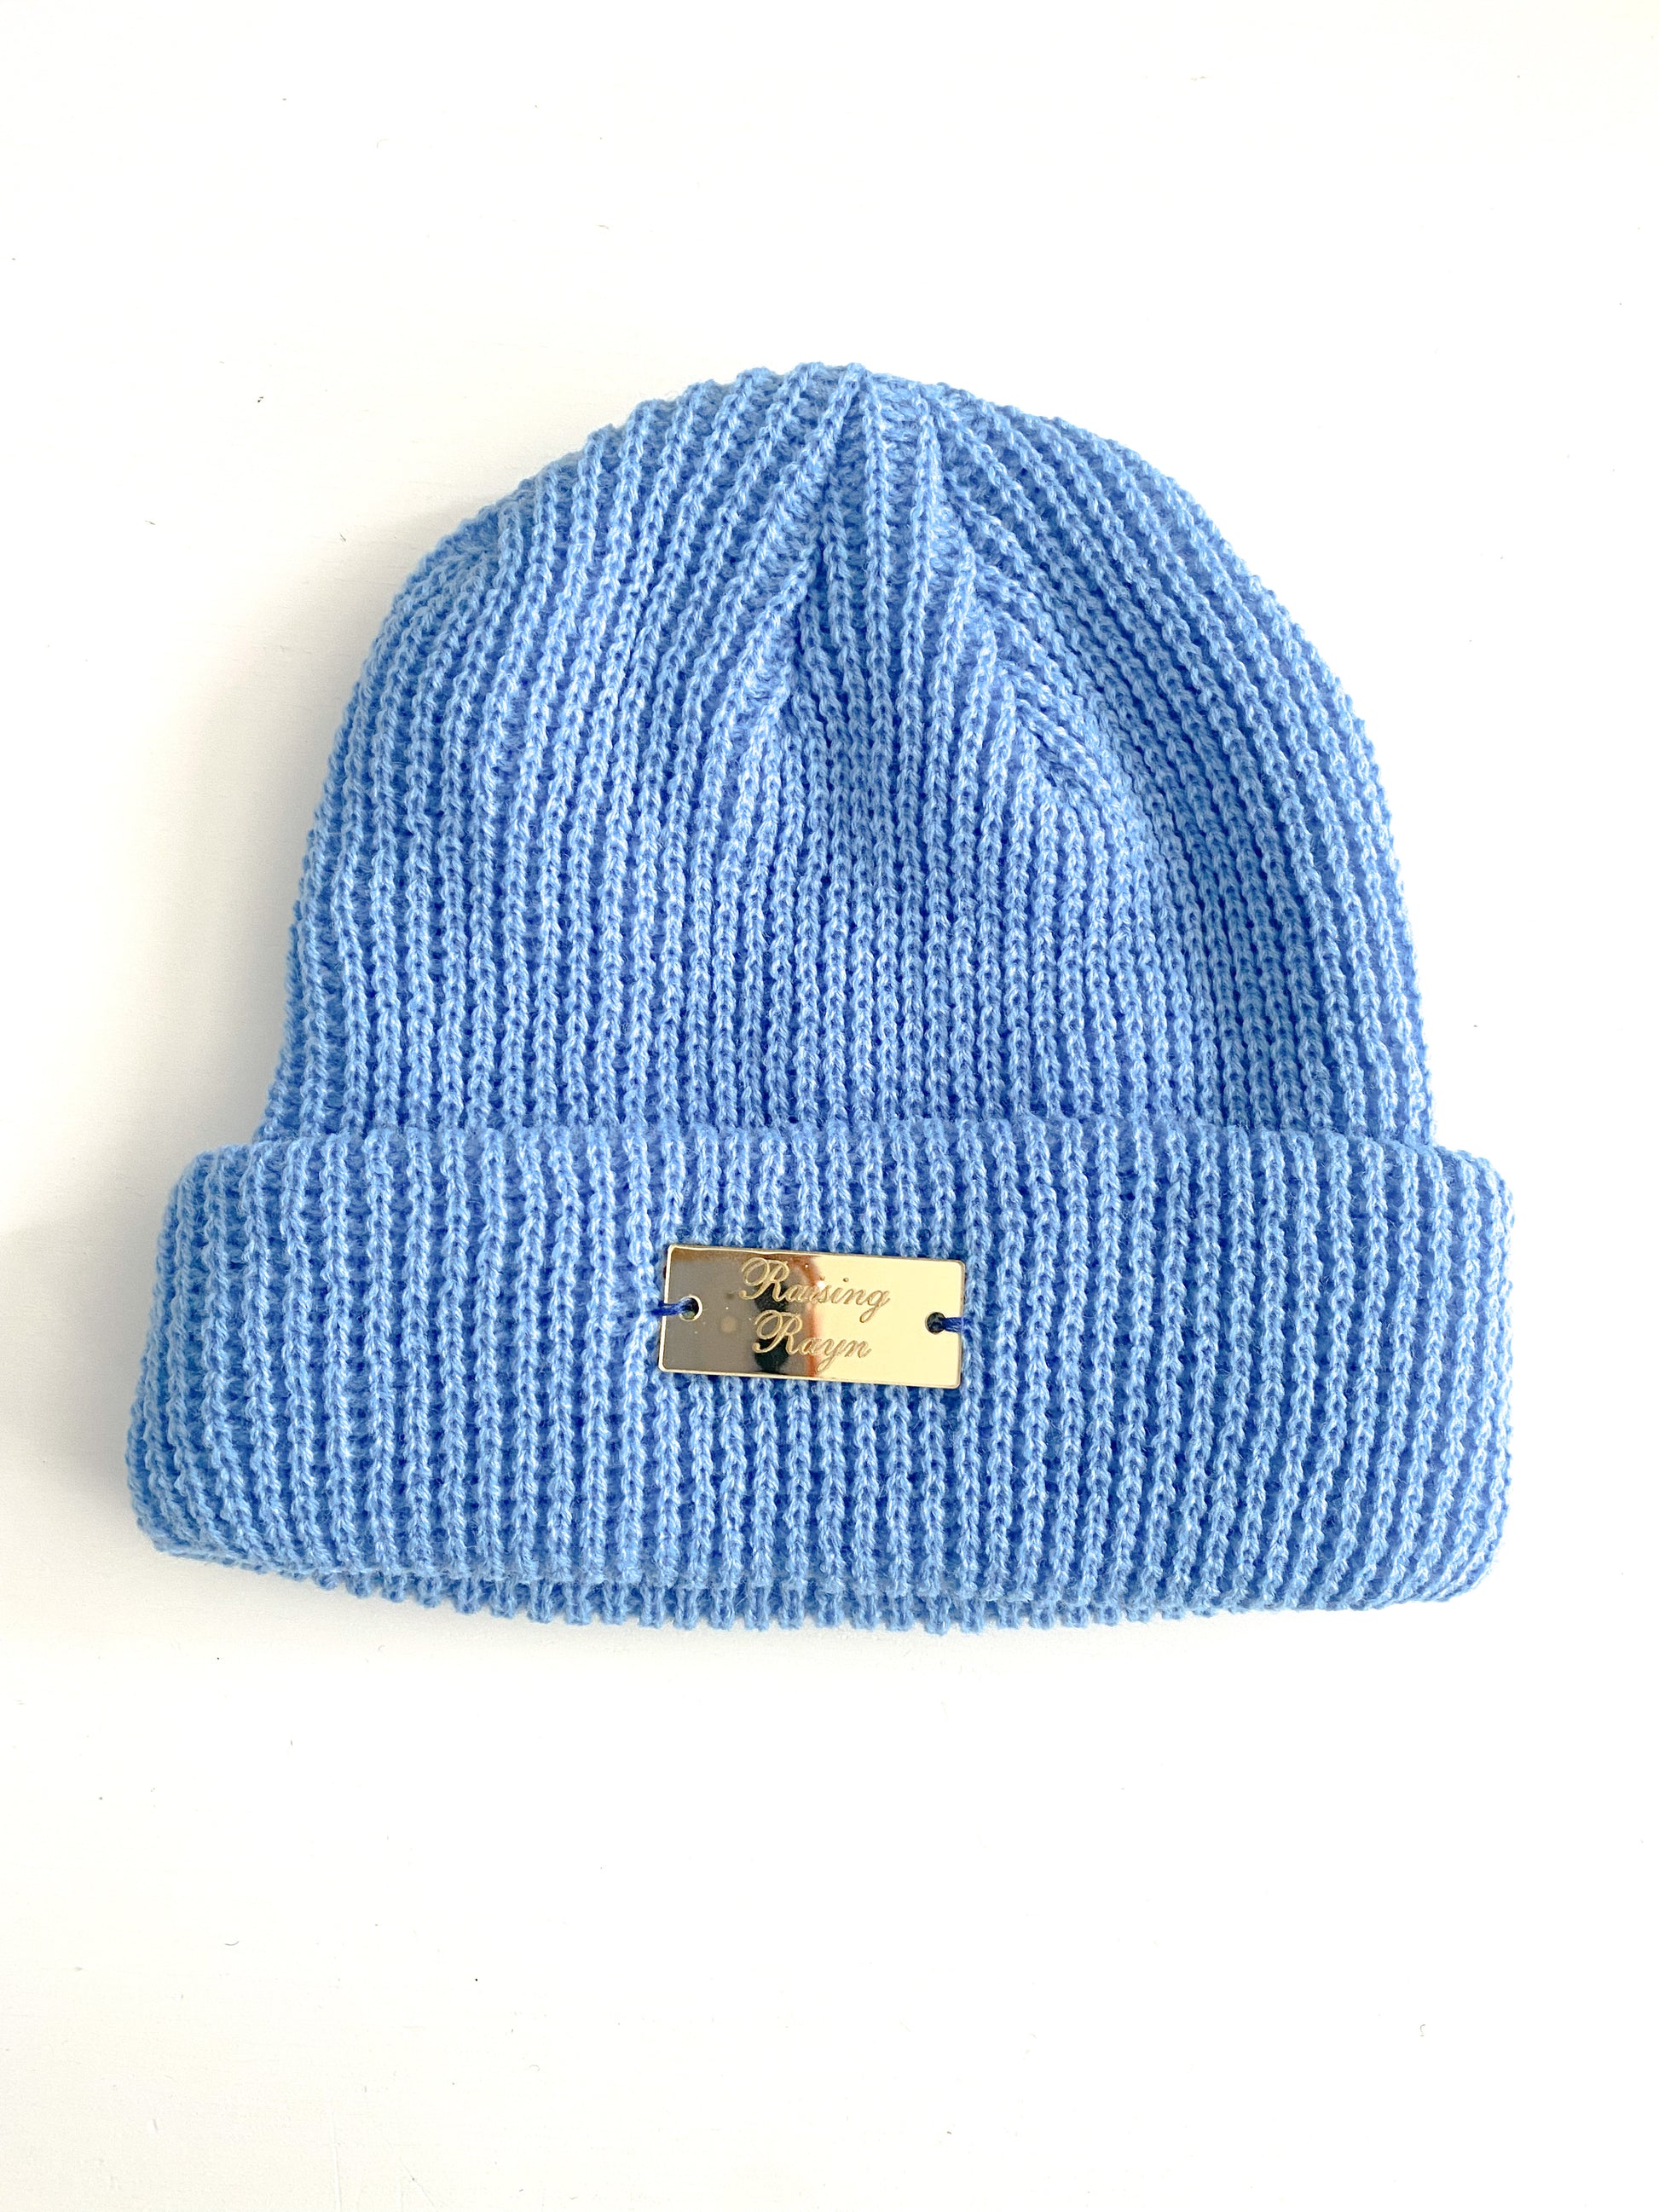 Blue Beanie Hat